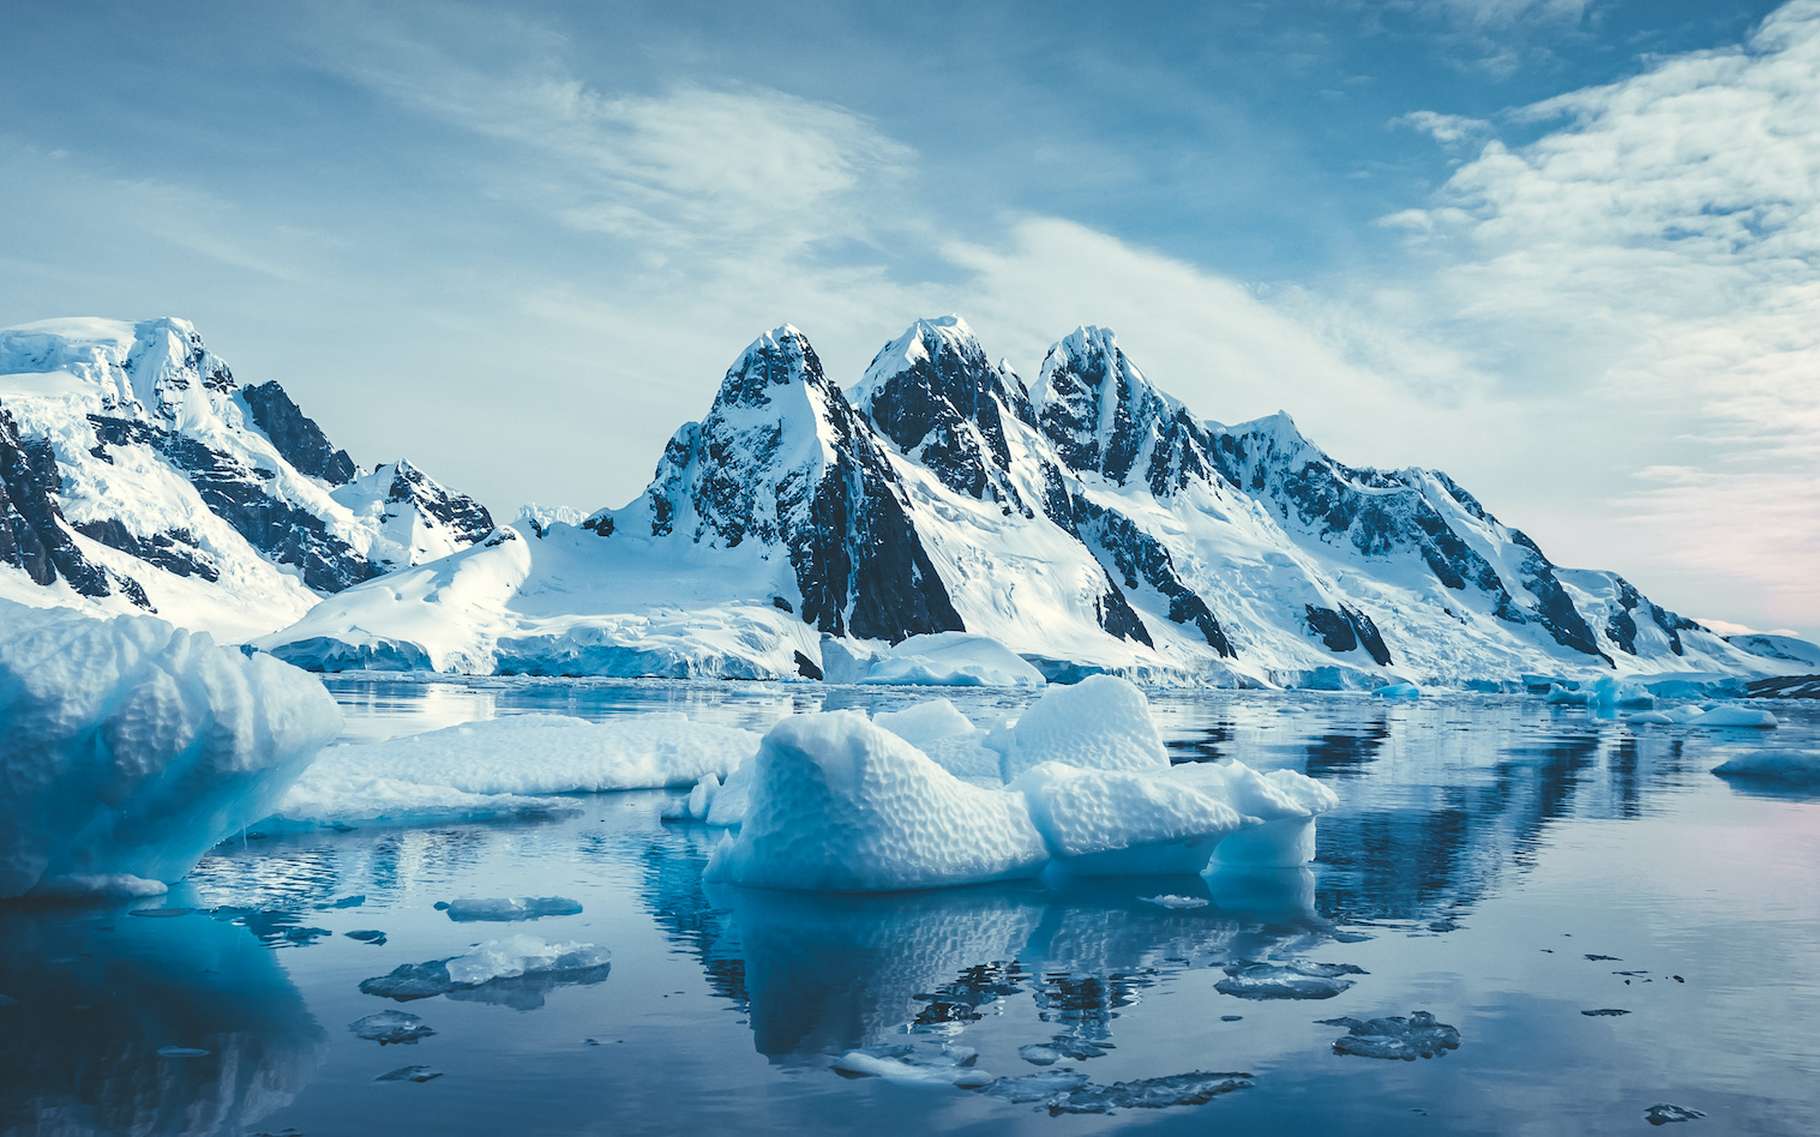 Le dégel du pergélisol dans les régions polaires est une préoccupation majeure dans le cadre du changement climatique global. © Goinyk, Adobe Stock